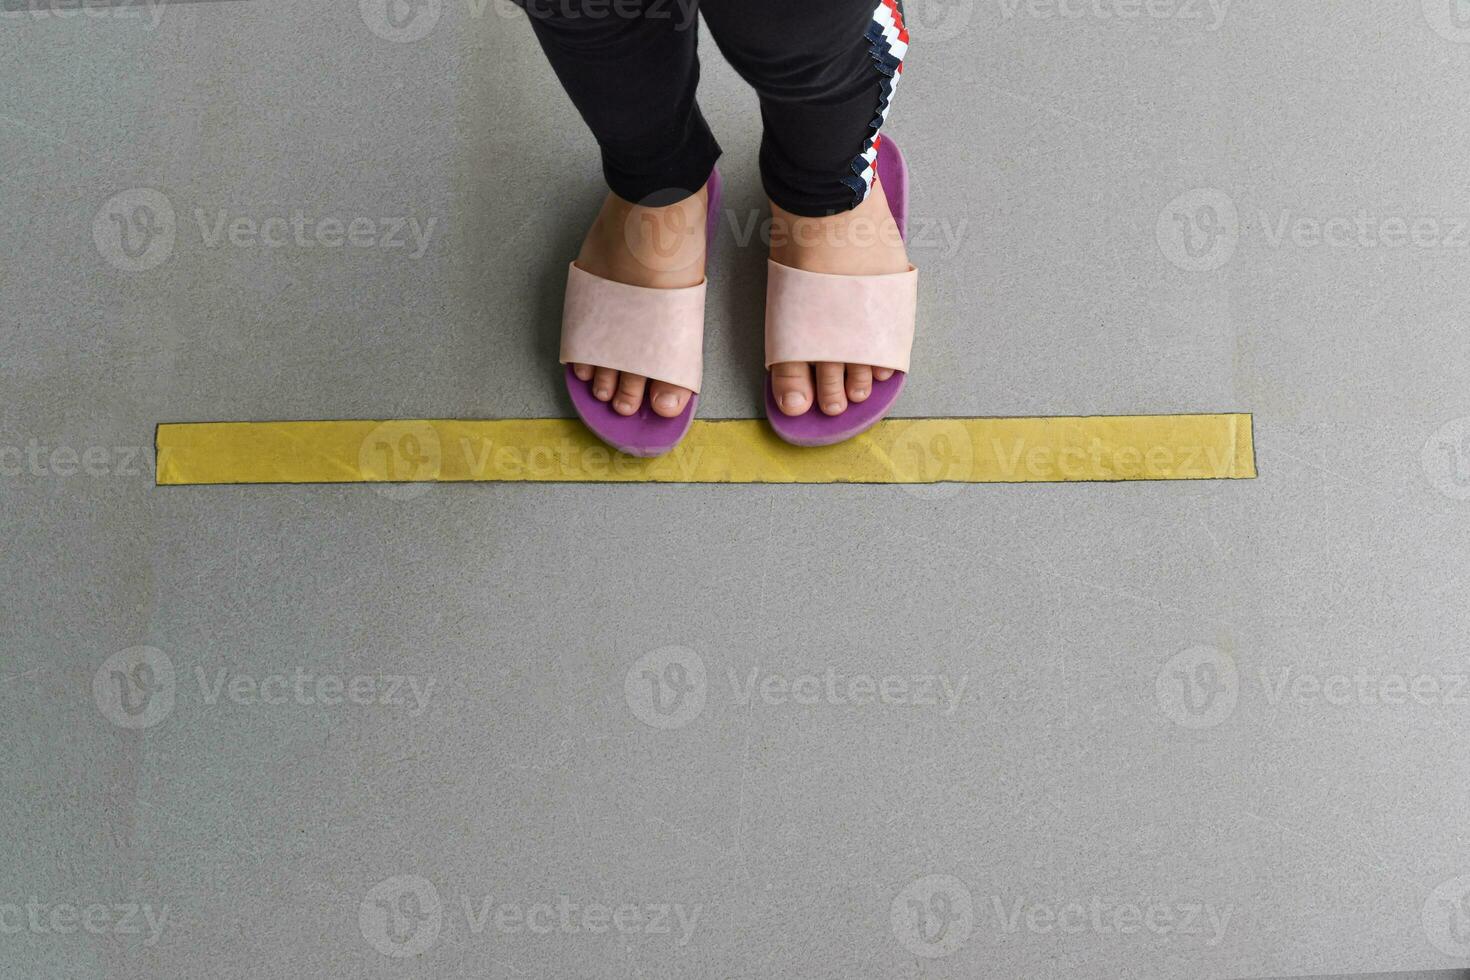 Die Füße stehen von oben nach unten in einer Linie auf dem Boden. konzept des öffentlichen raums, der soziale distanzierung praktiziert. foto